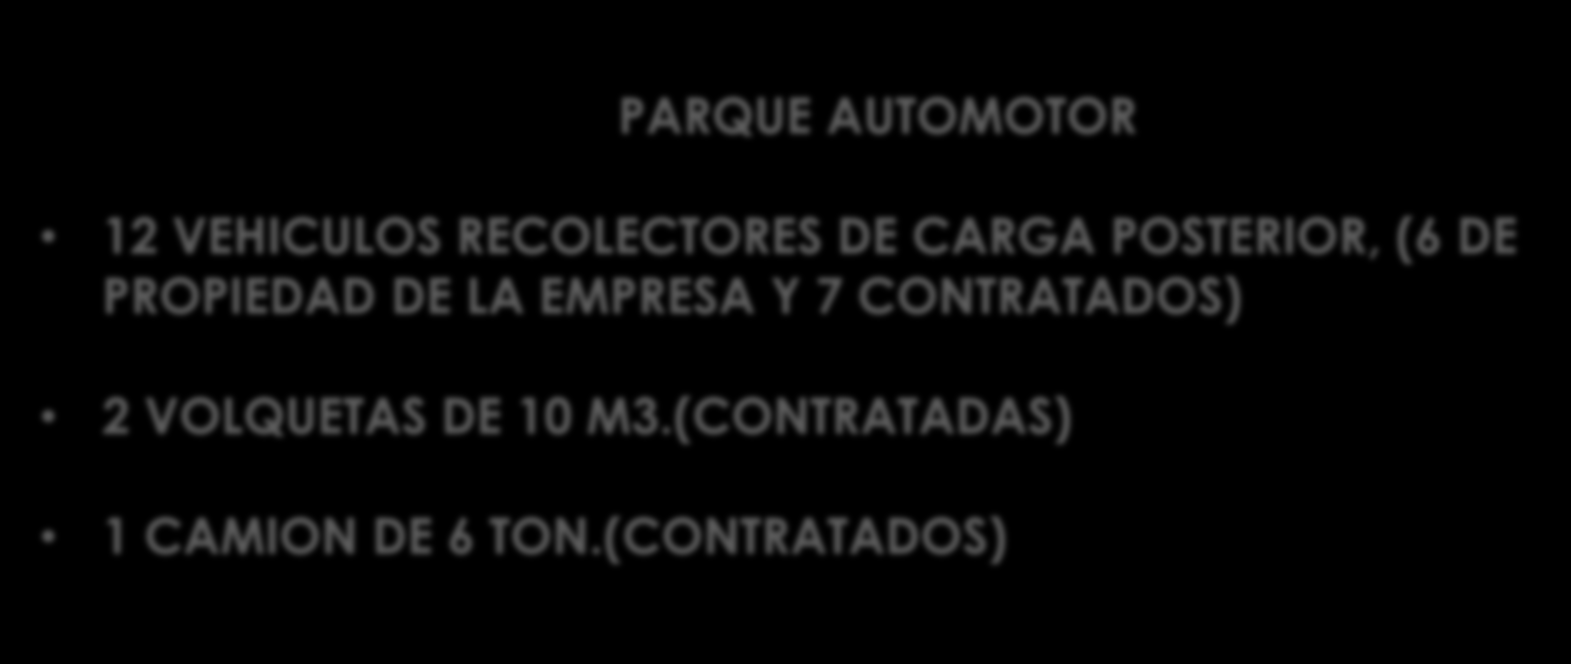 TRANSPORTE DE DESECHOS SOLIDOS PARQUE AUTOMOTOR 12 VEHICULOS RECOLECTORES DE CARGA POSTERIOR, (6 DE